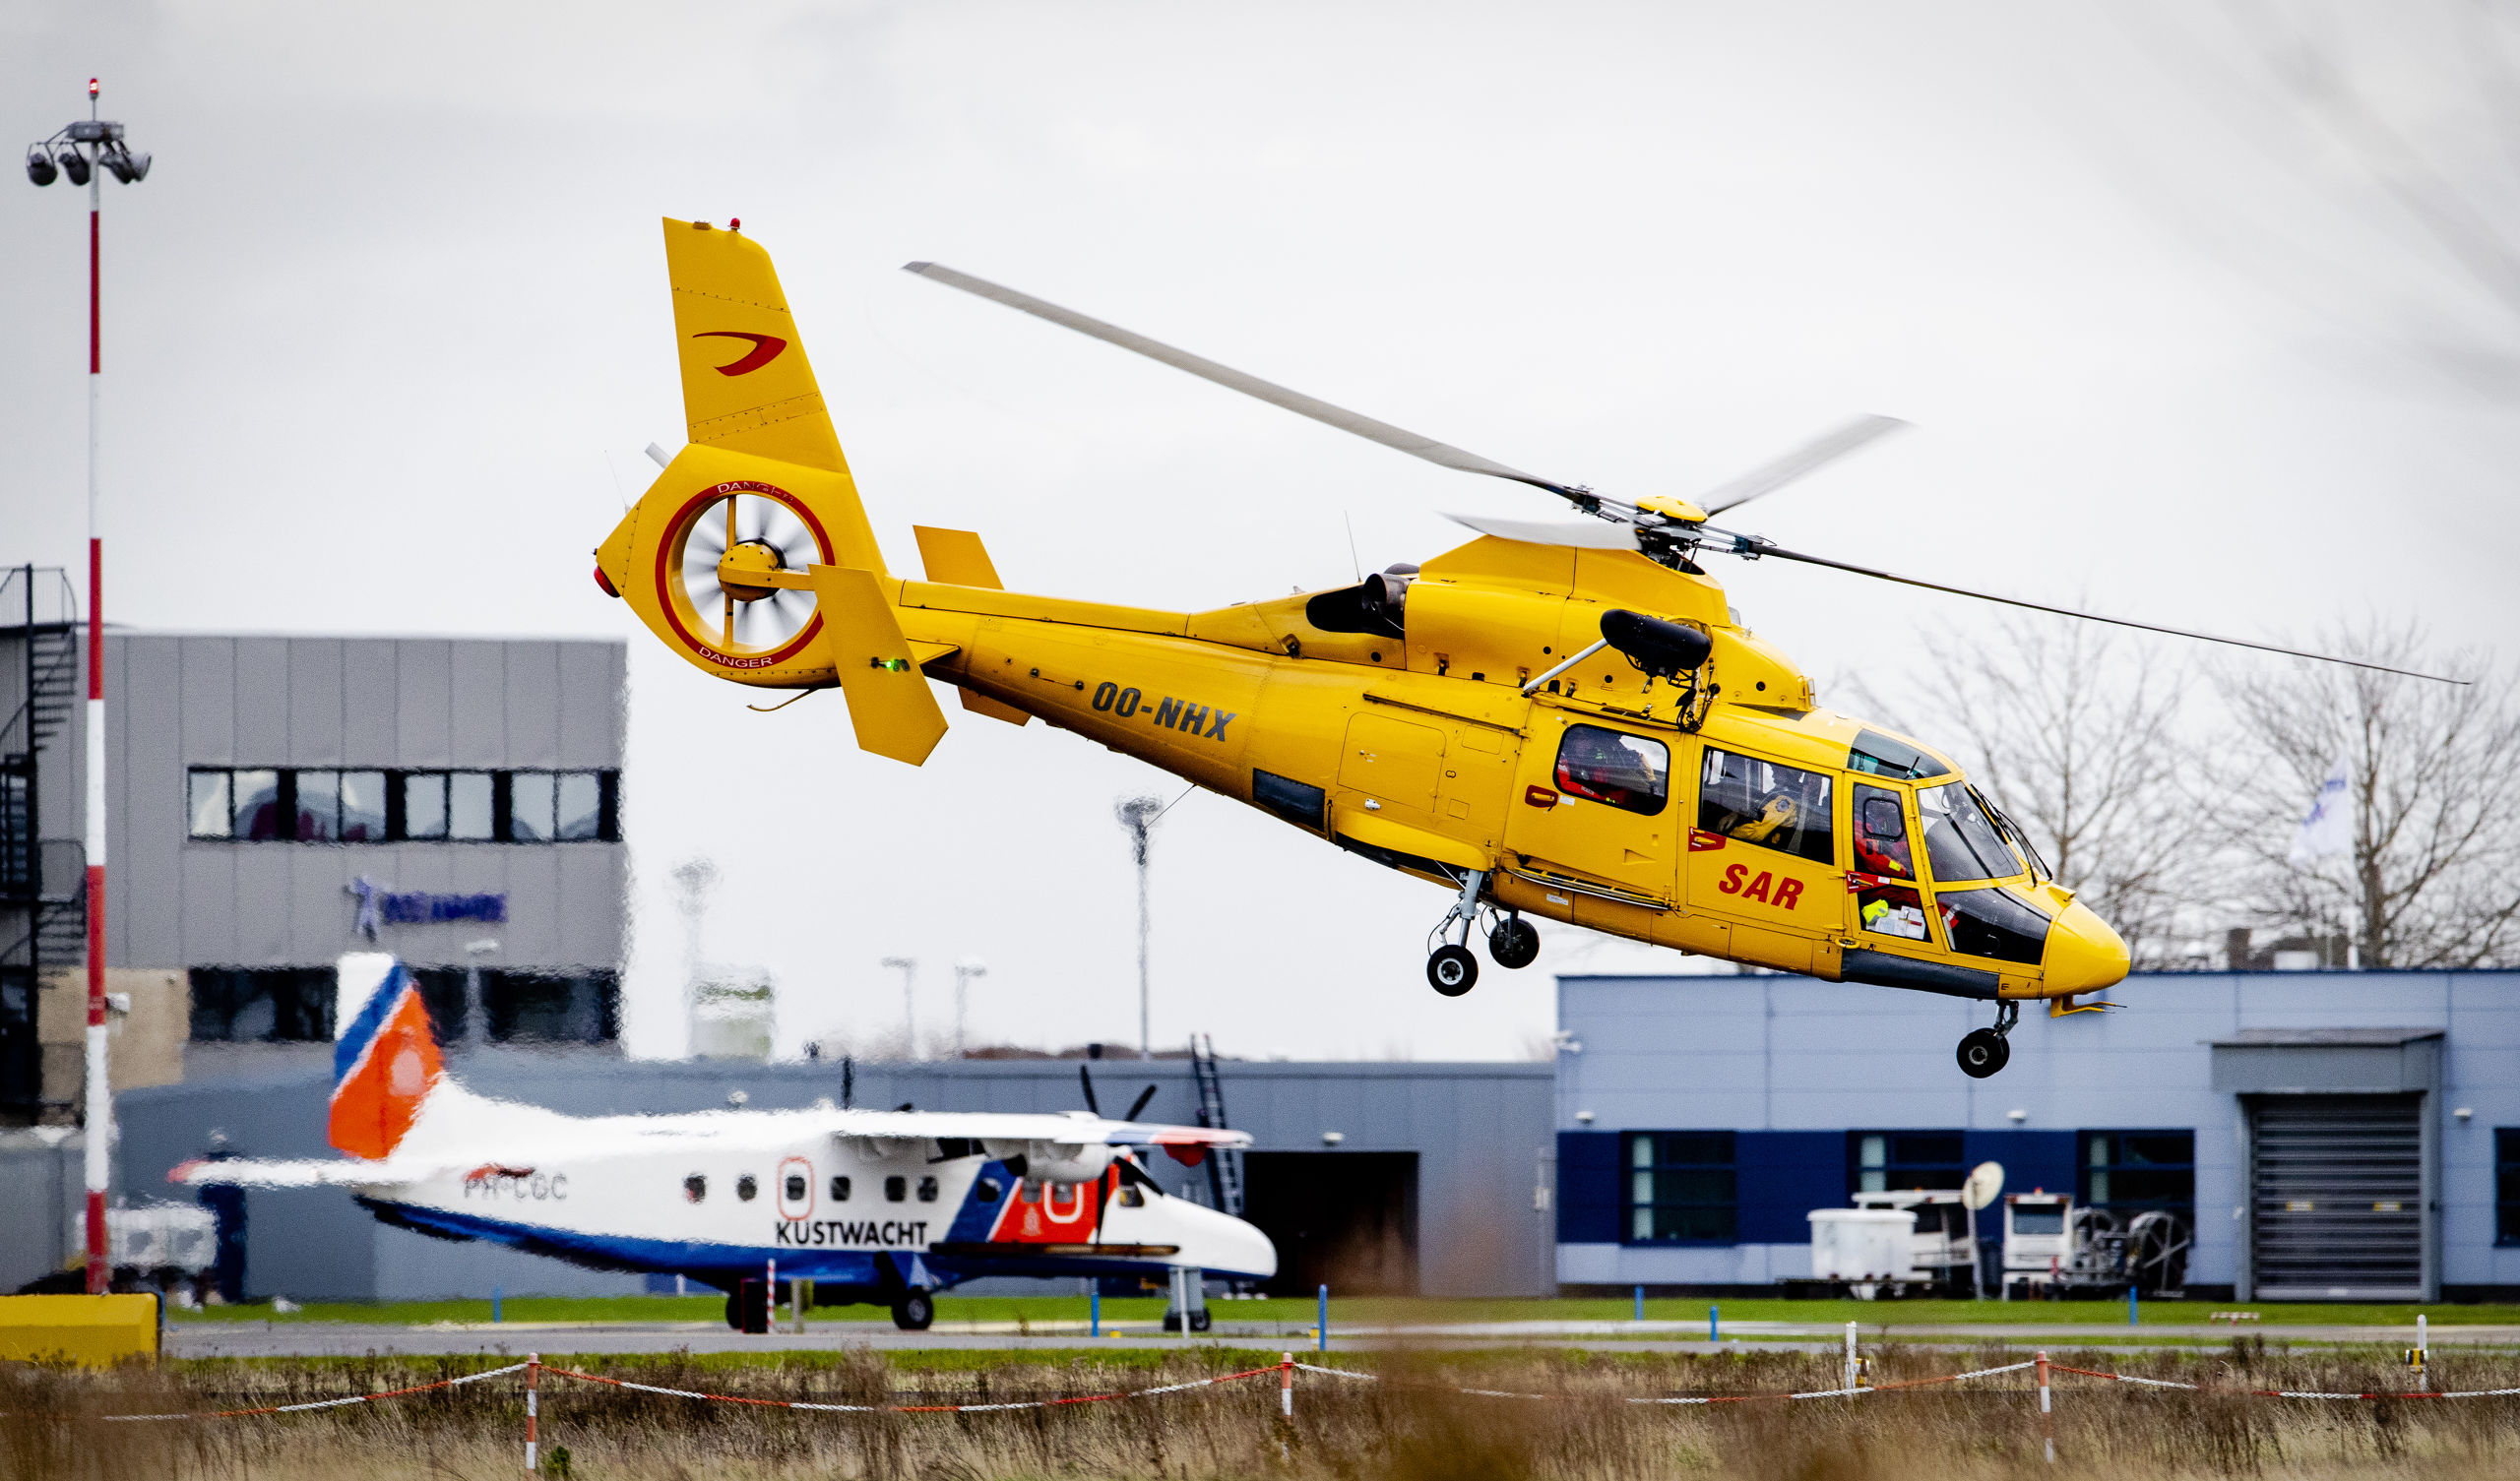 Een Search and Rescue (SAR) helikopter vertrekt vanaf Maritiem Vliegkamp De Kooy. De Kustwacht van Den Helder is op zoek naar de twee opvarenden van de vermiste vissersboot uit Urk, de UK165 Lummetje, die verdween tussen Texel en Den Helder. 